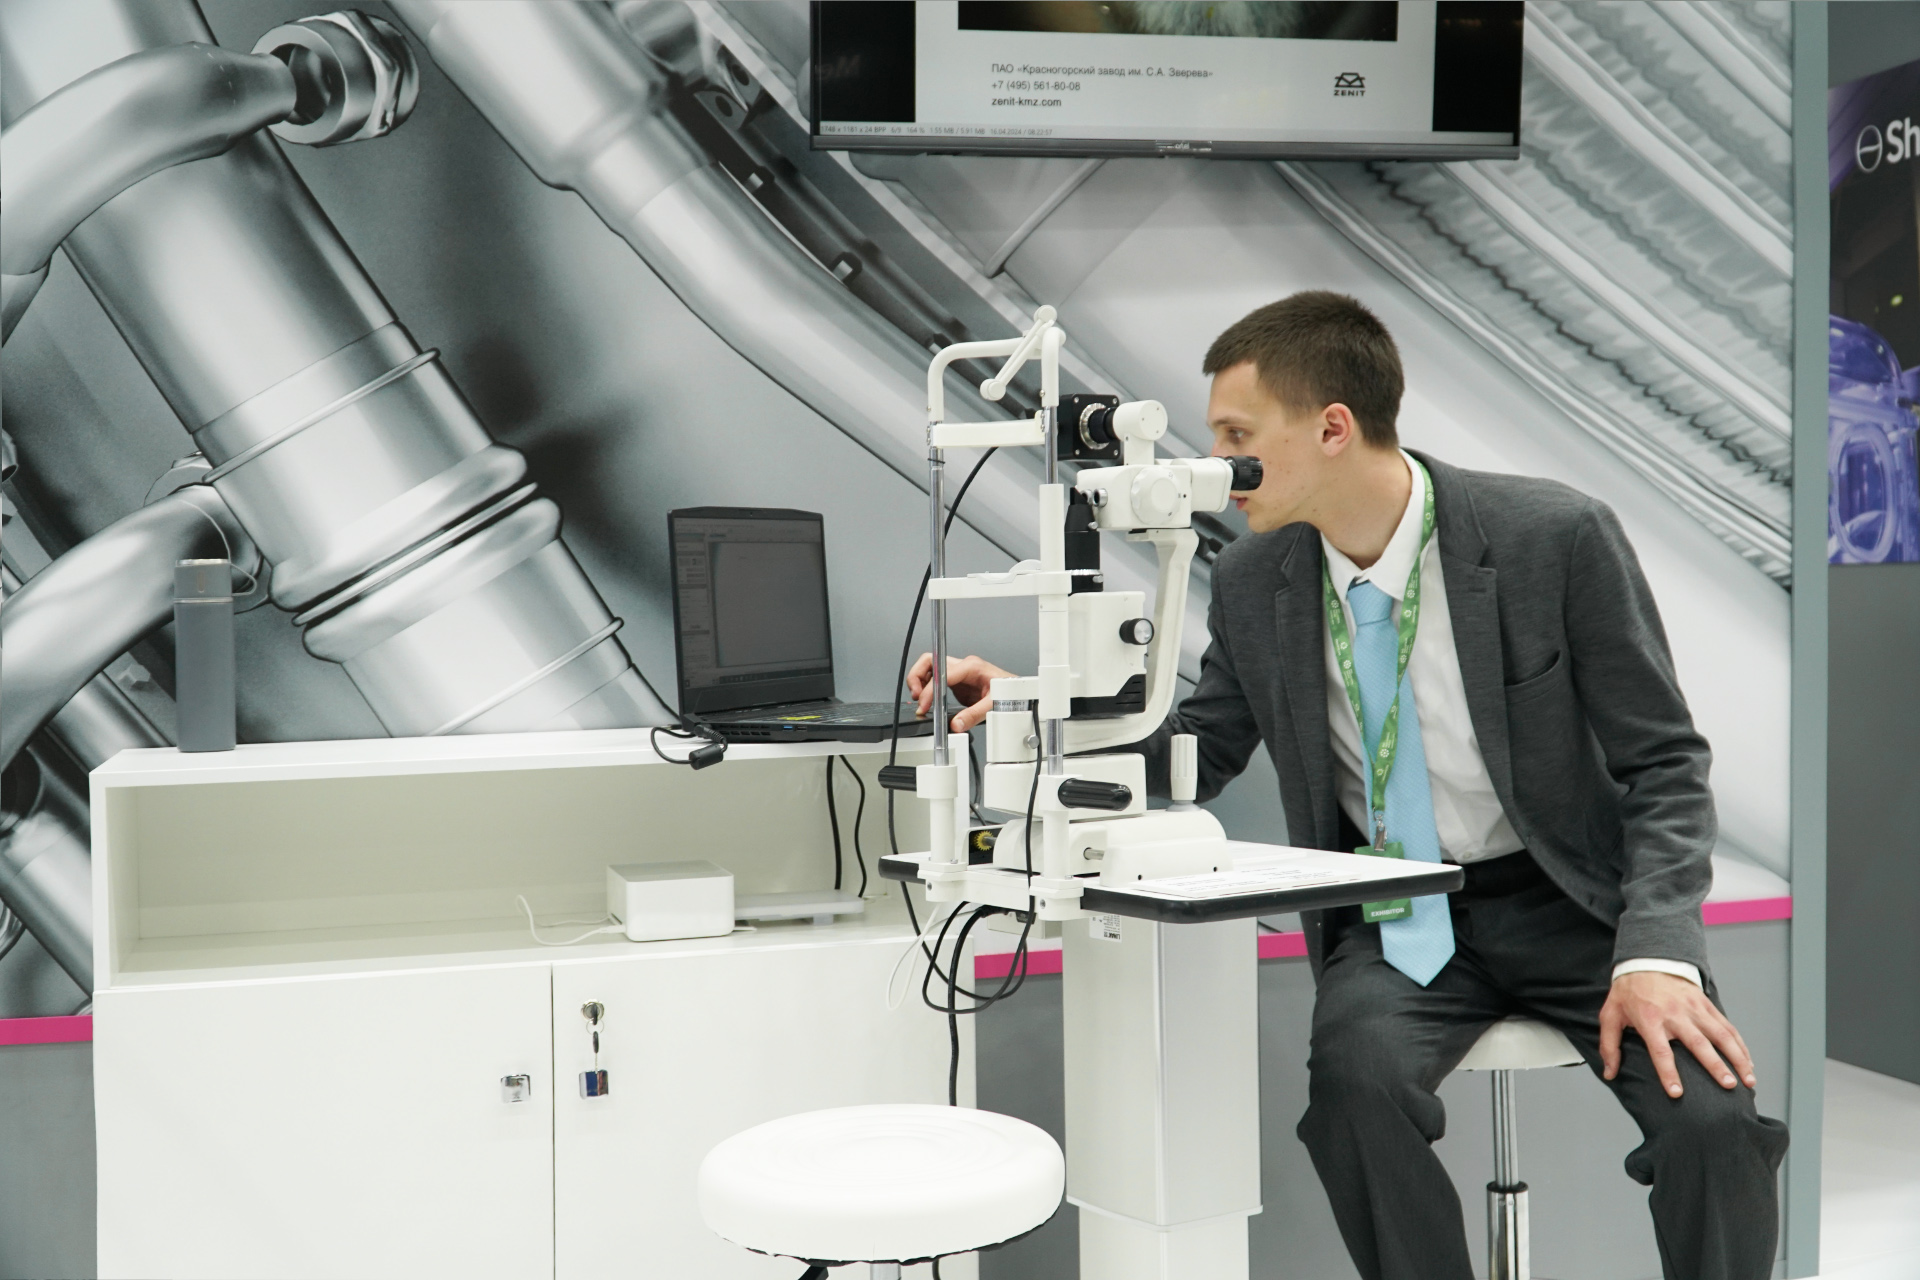 «Швабе» показывает офтальмологическое оборудование на выставке в Ташкенте